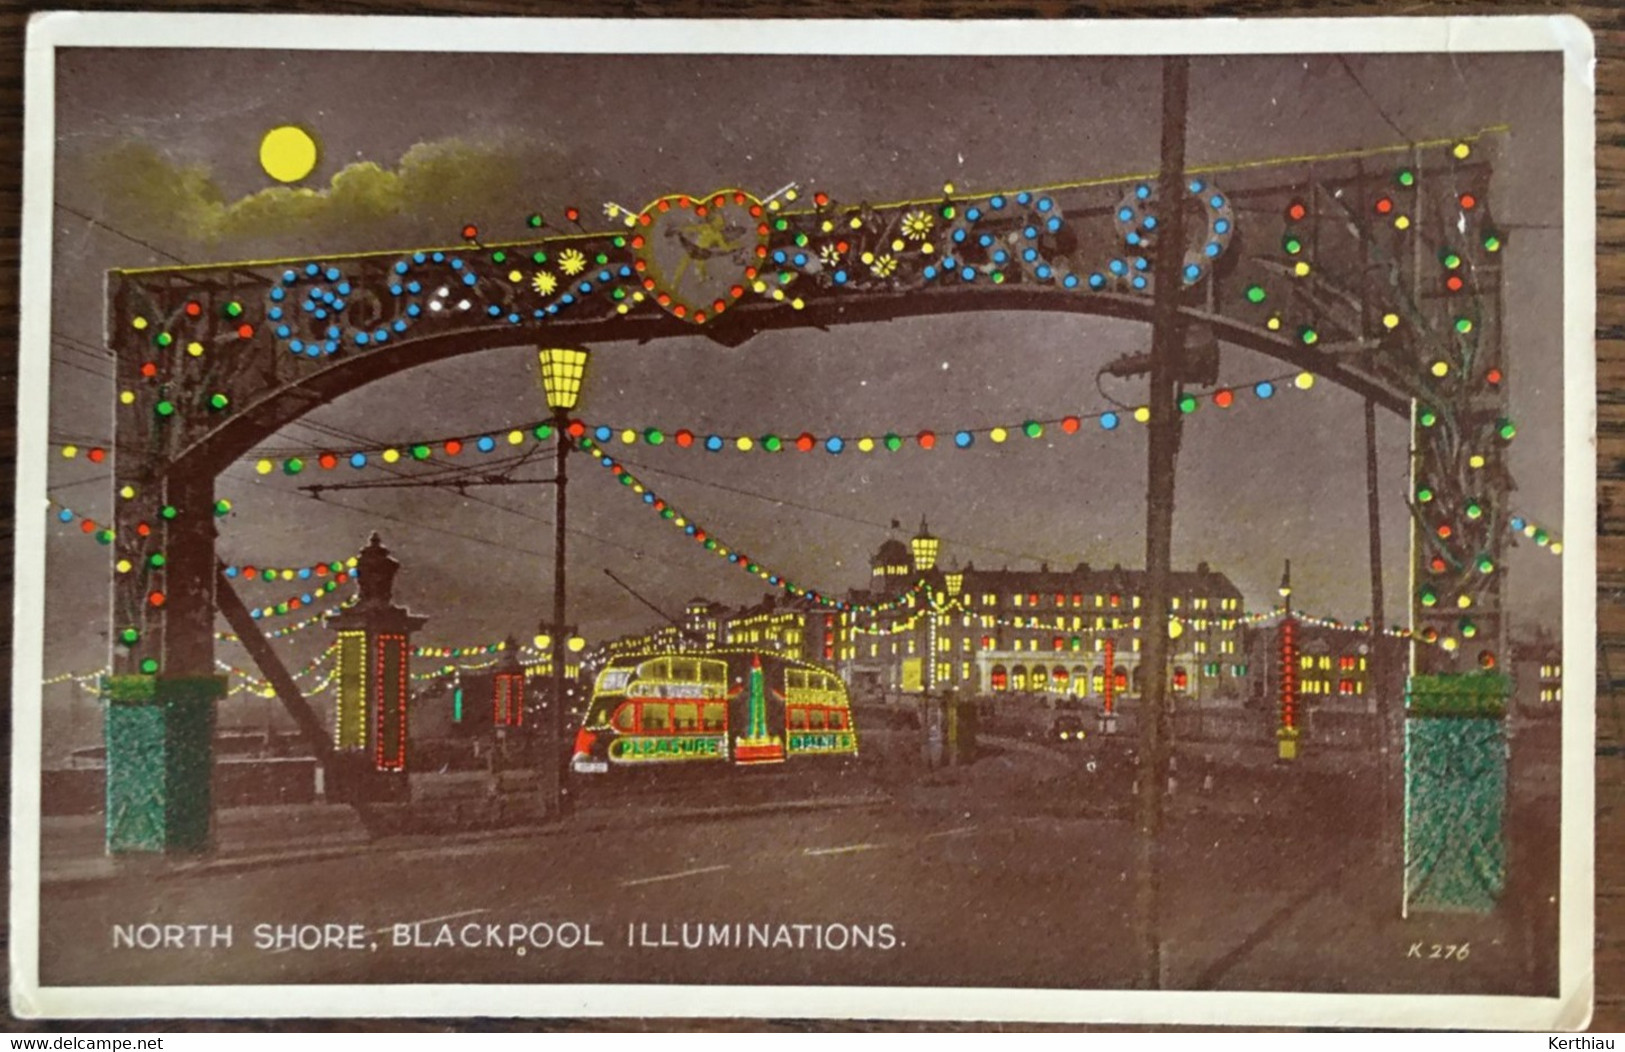 Blackpool- illuminations - 10 cartes différentes, dont deux multi-vues. Années 40 et 50